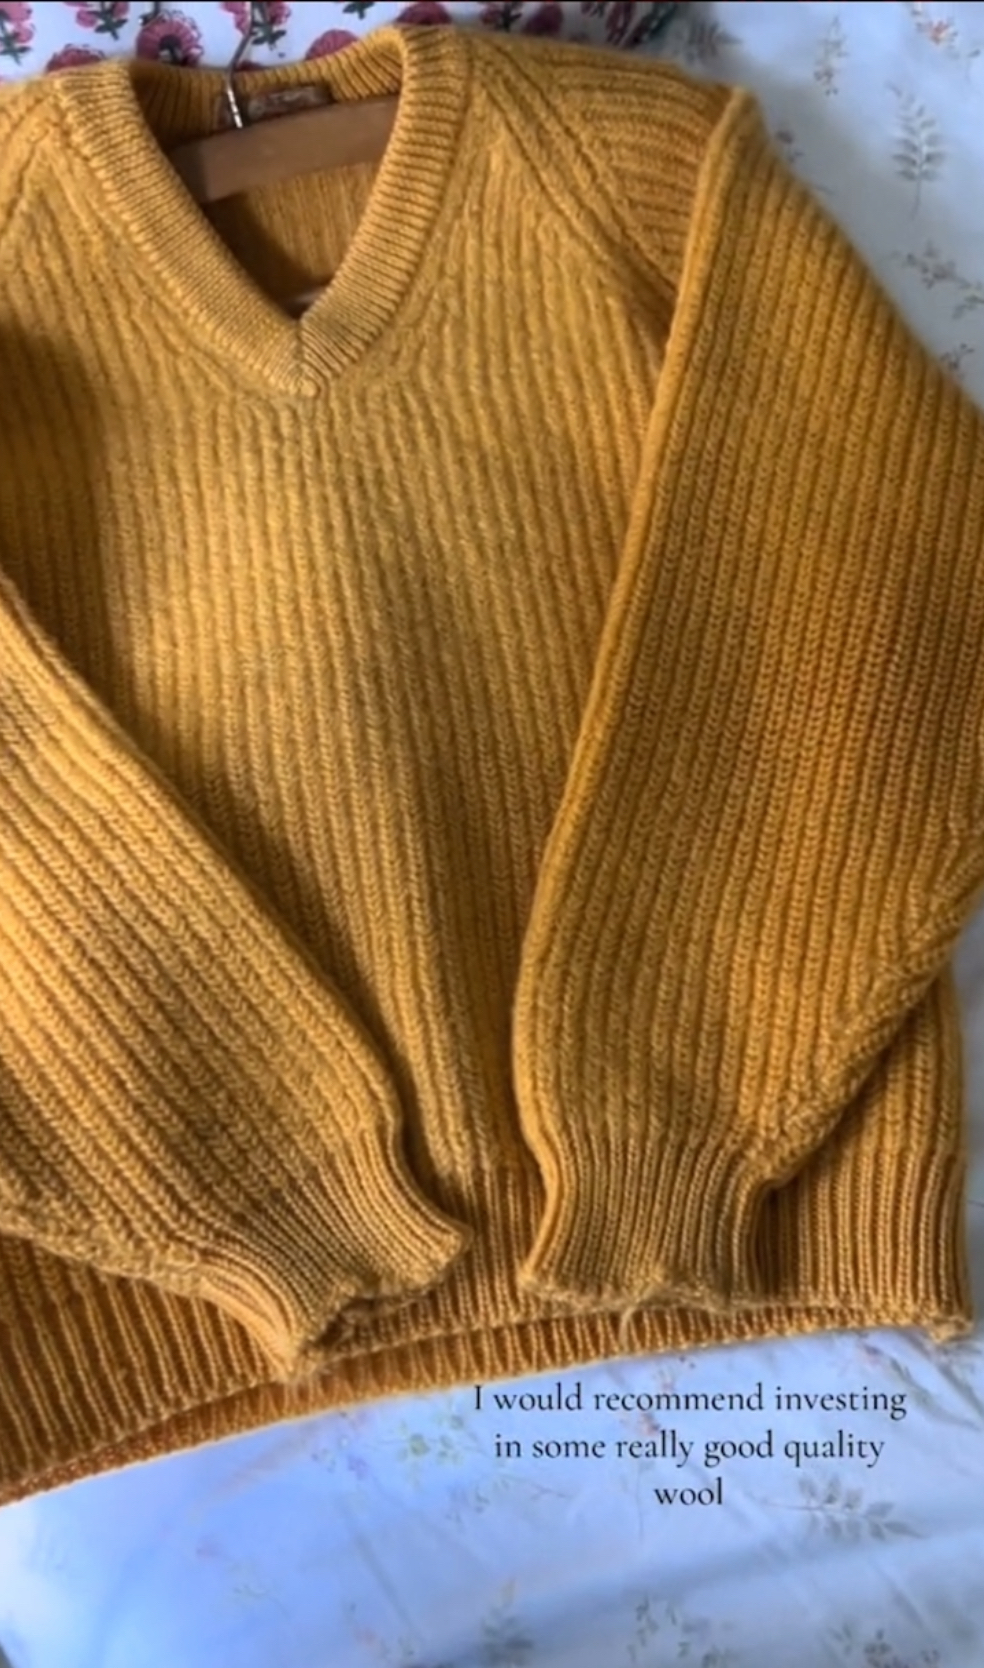 Cydney推荐羊毛是好材质，值得花钱买贵一点的优质毛衣。 TikTok